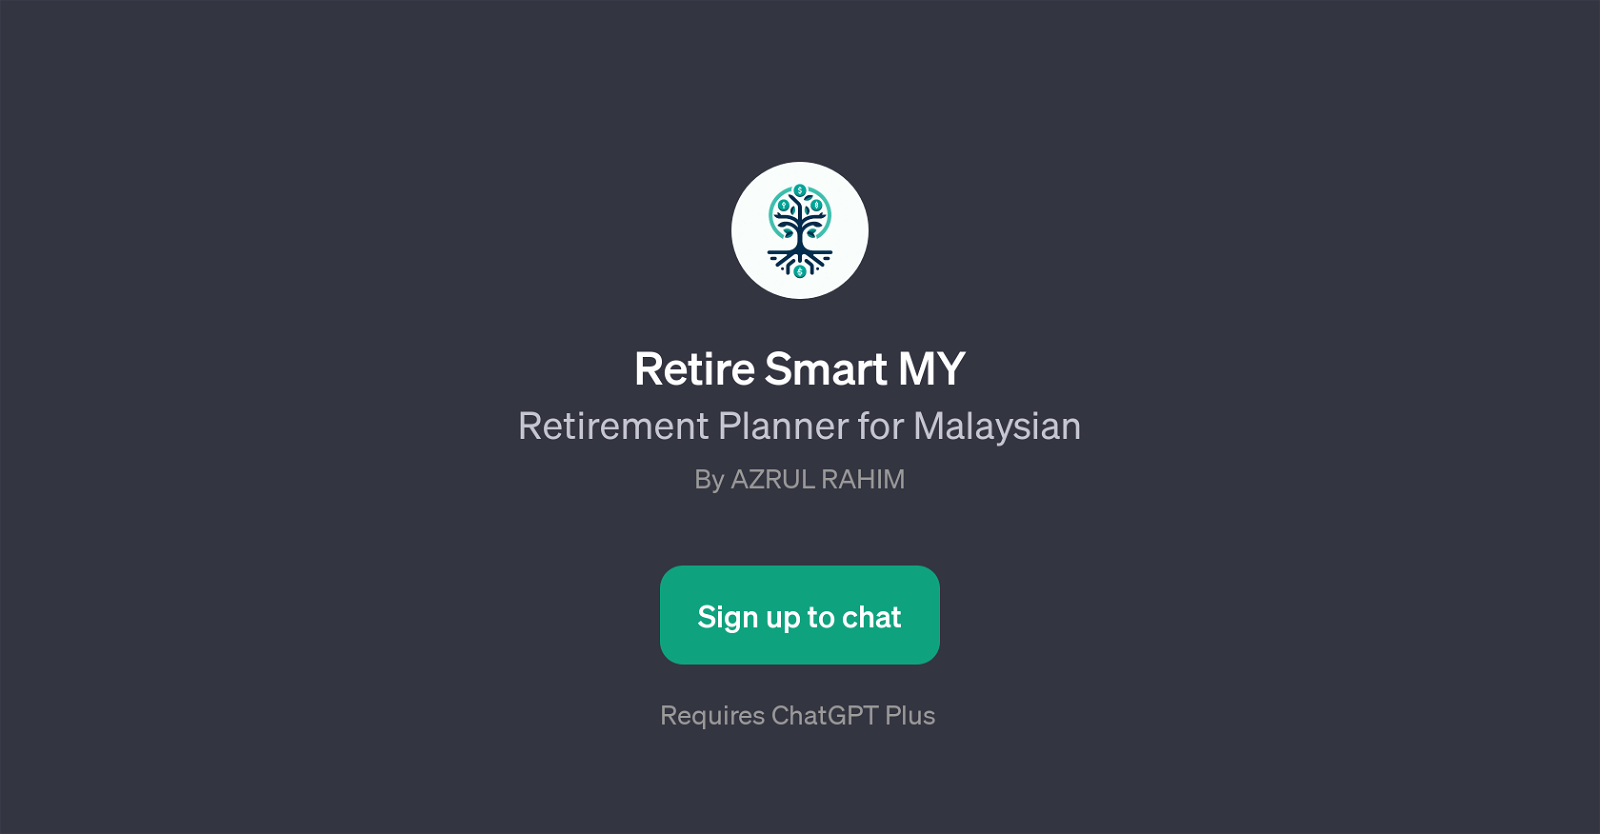 Retire Smart MY website